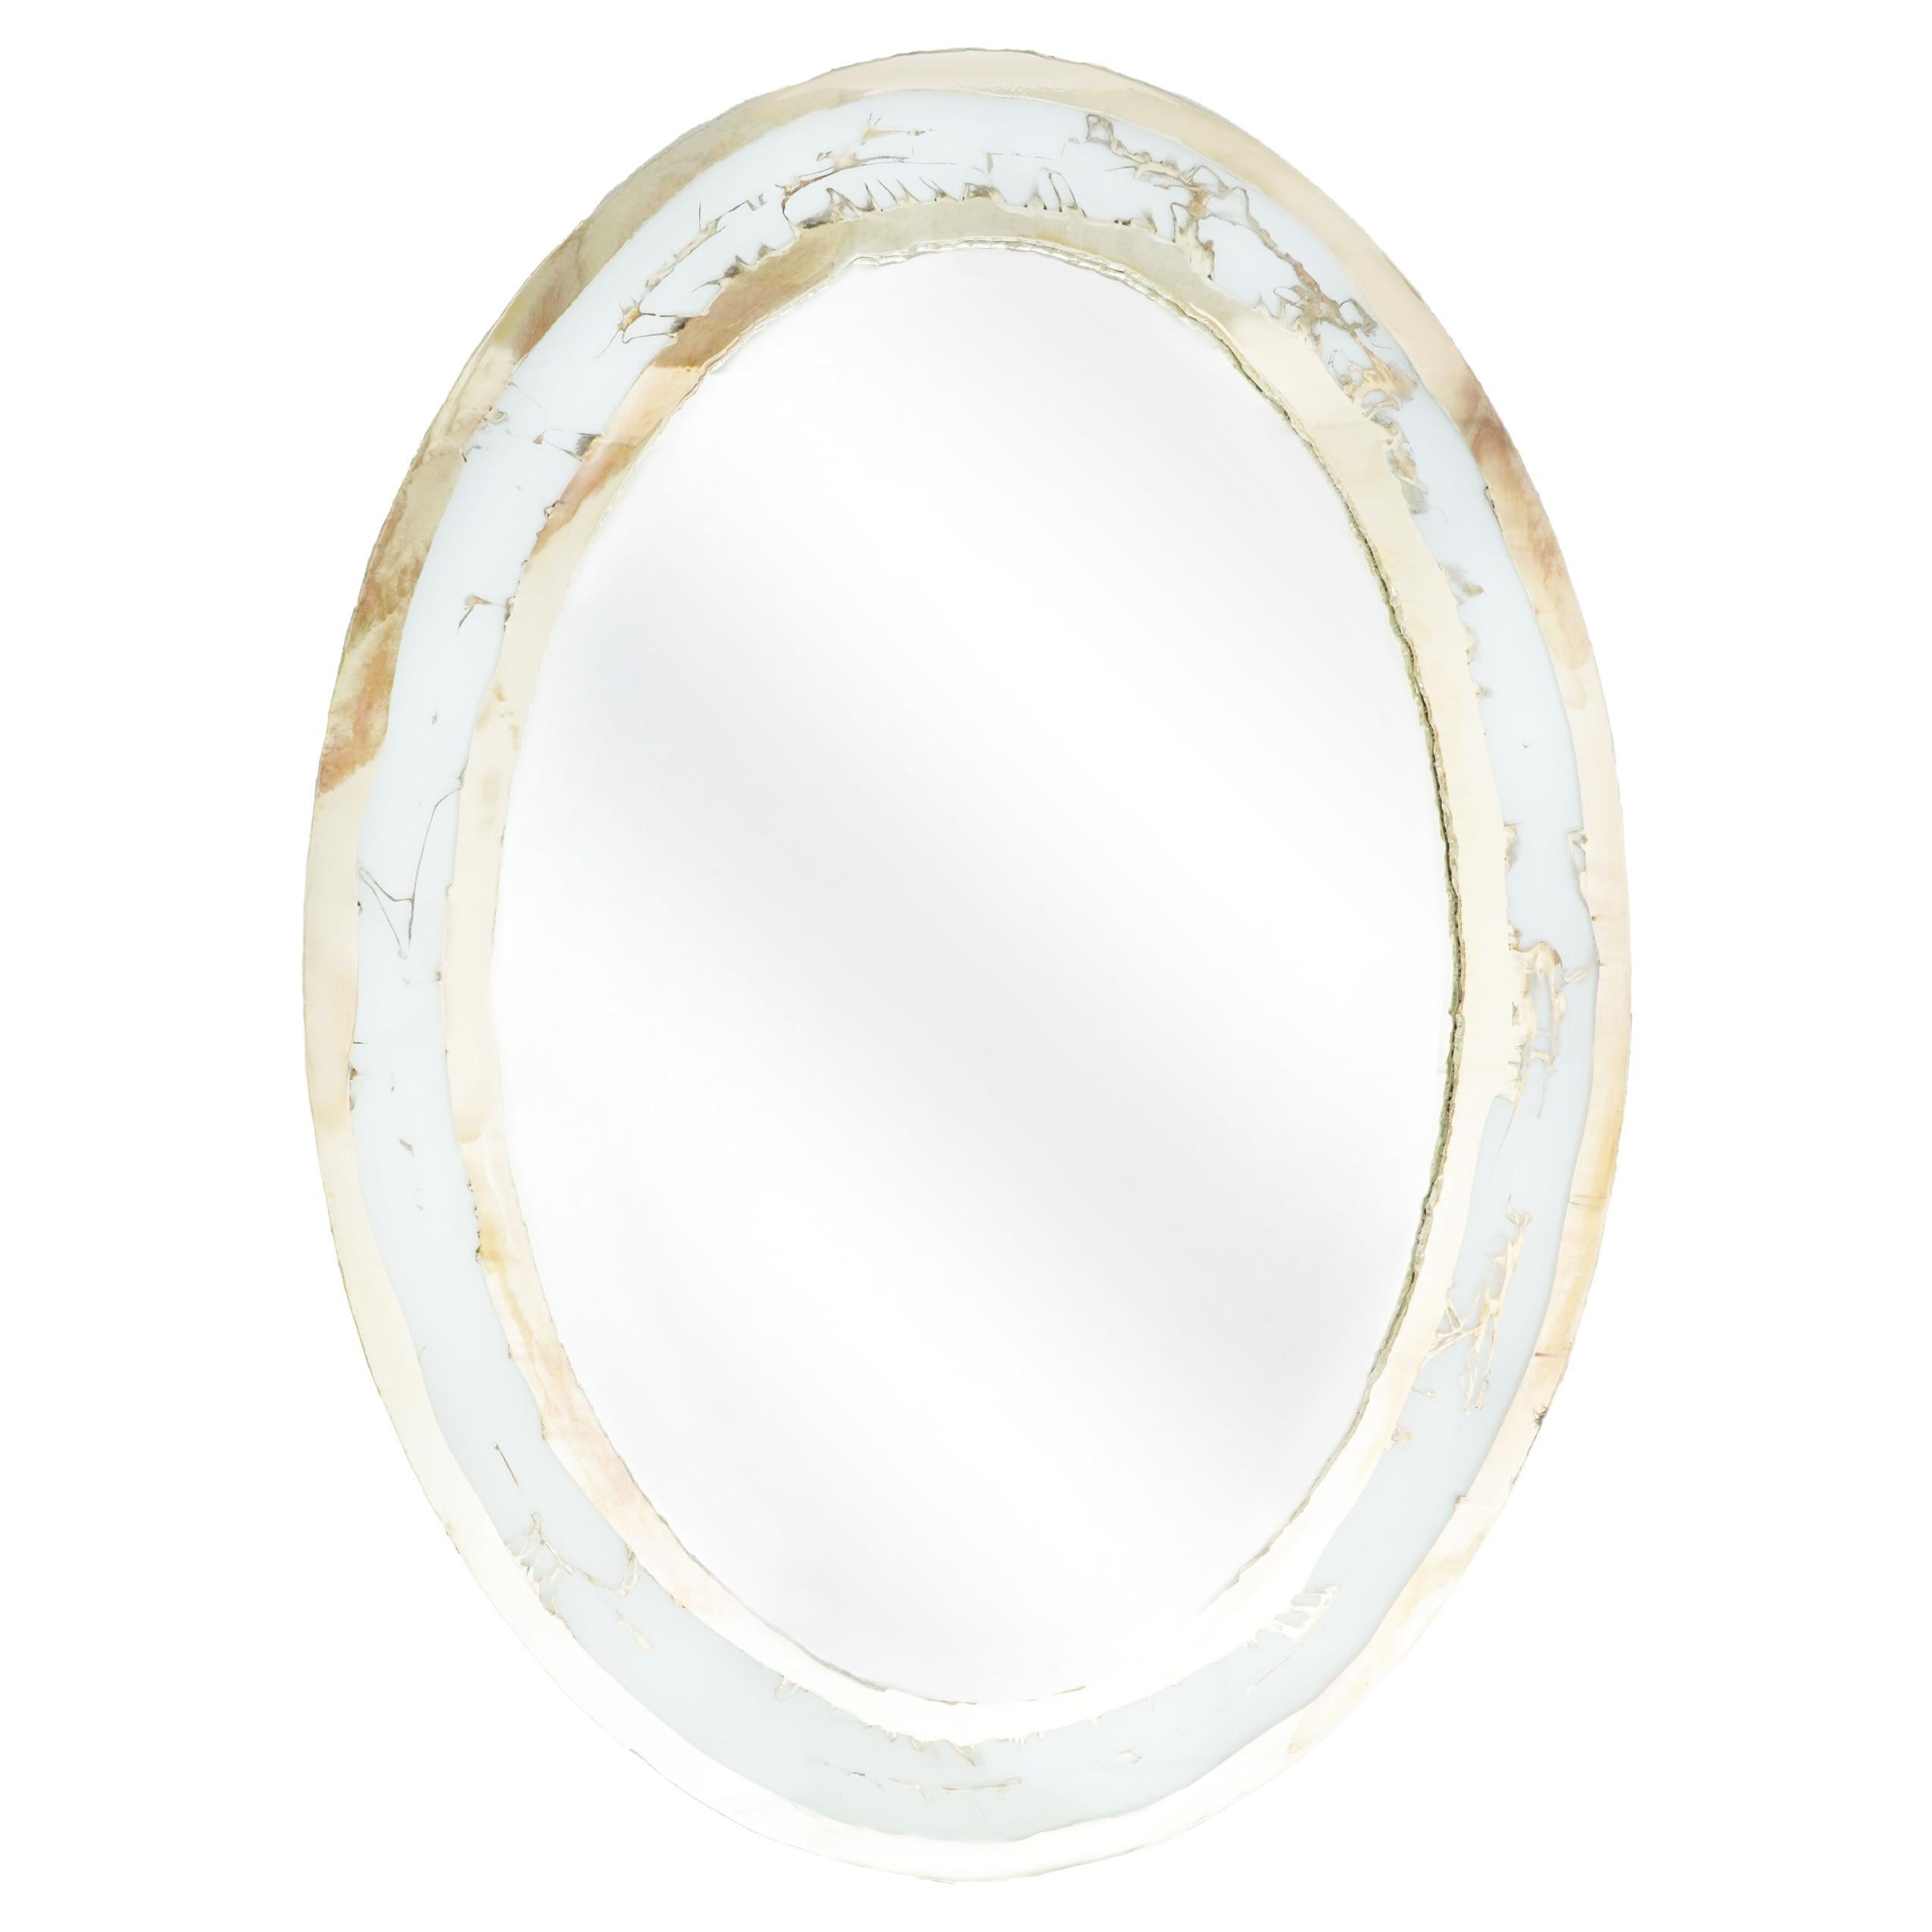 Zeitgenössischer Wandspiegel „Life“ aus weißem Glas, versilbert, zentraler Spiegel